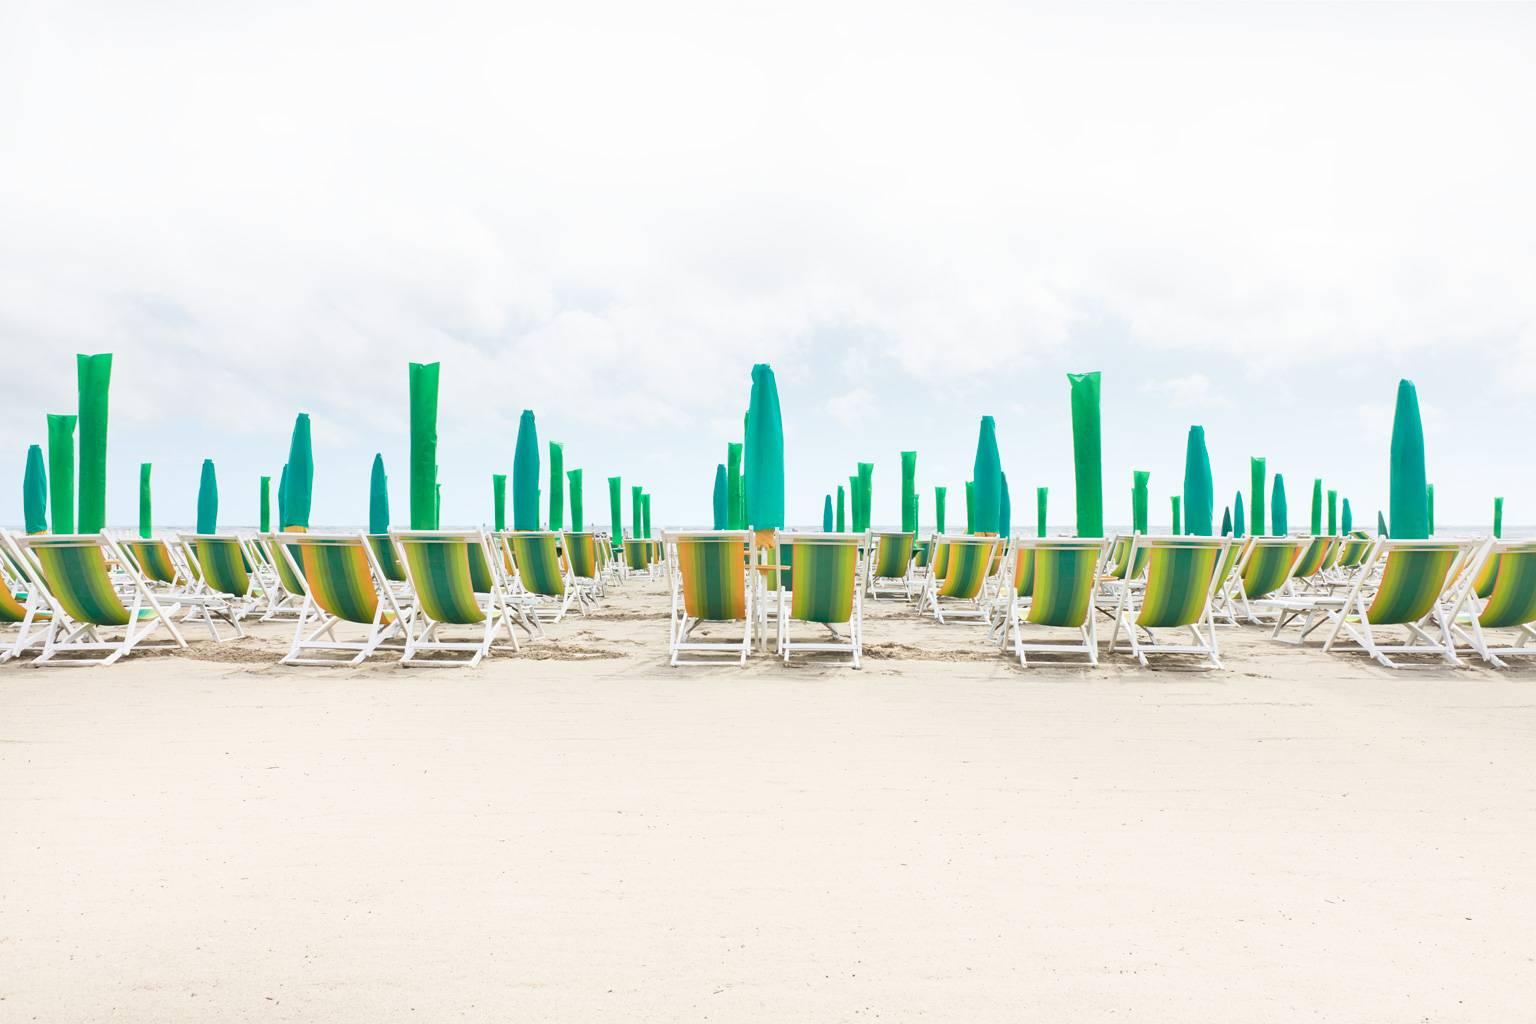 Forte dei Marmi - iconic Italian beach resort on Mediterranean Sea 26x40" framed